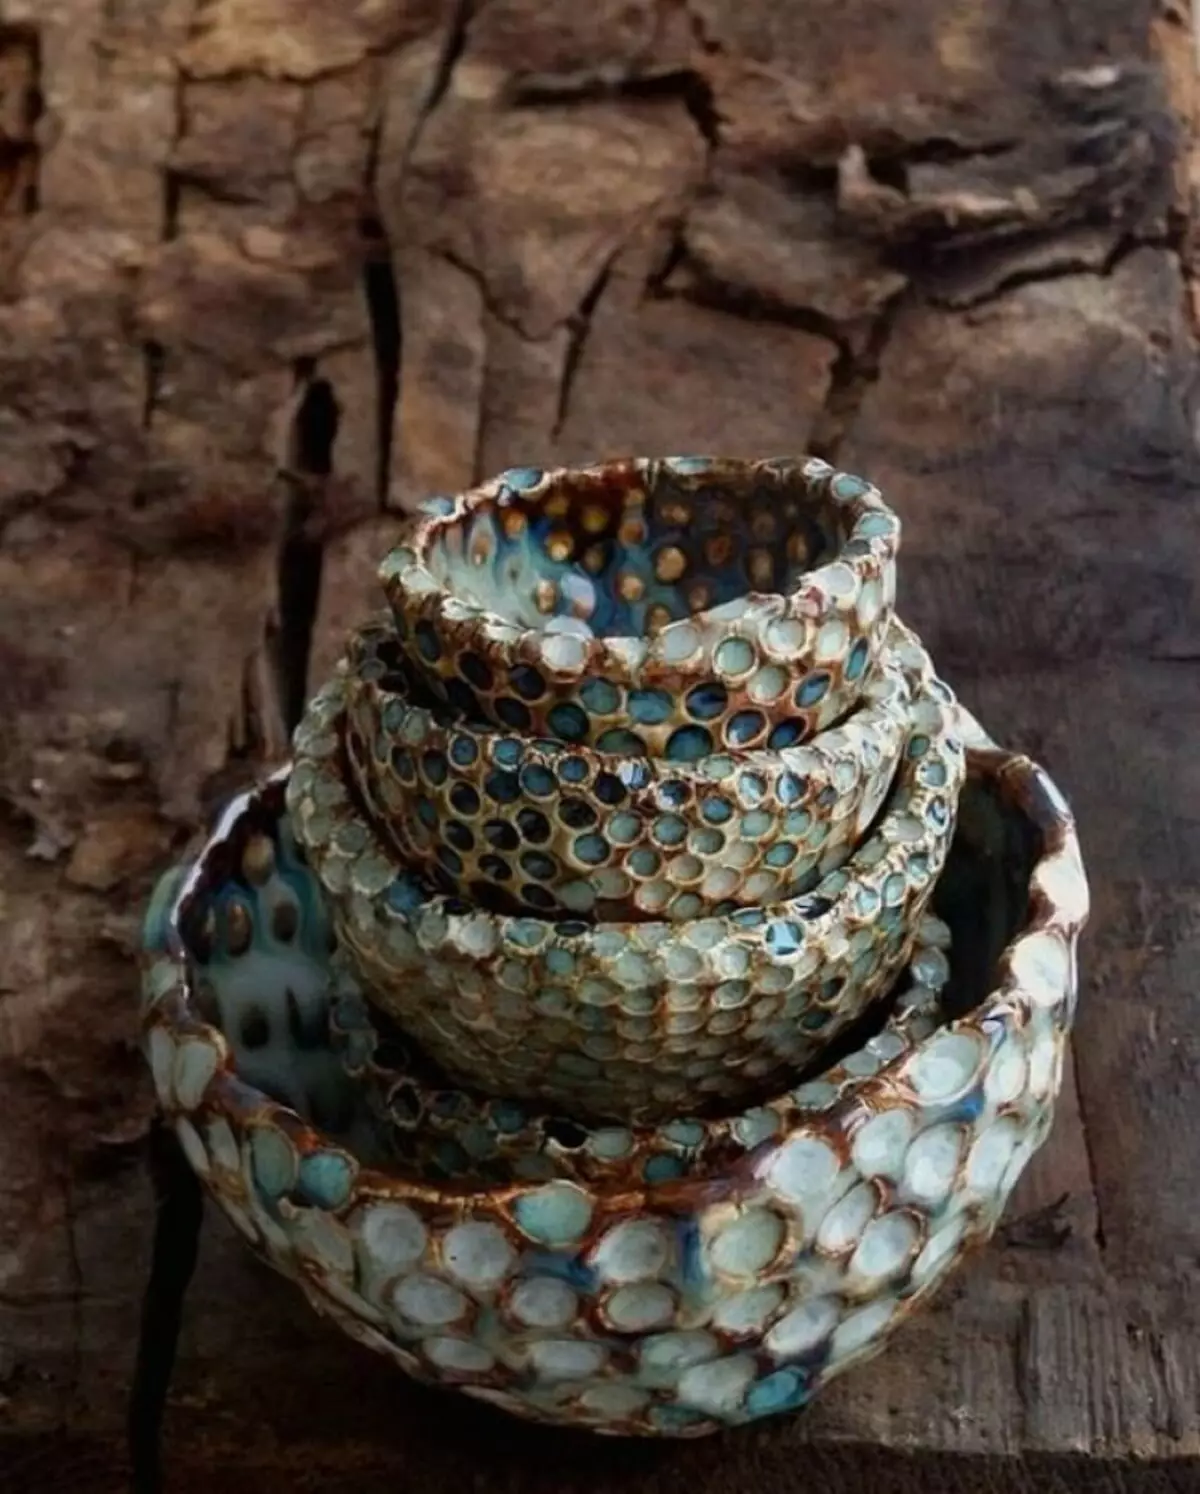 I-ceramics yesandla: izimvo zabo baphuphayo basebenza nodongwe